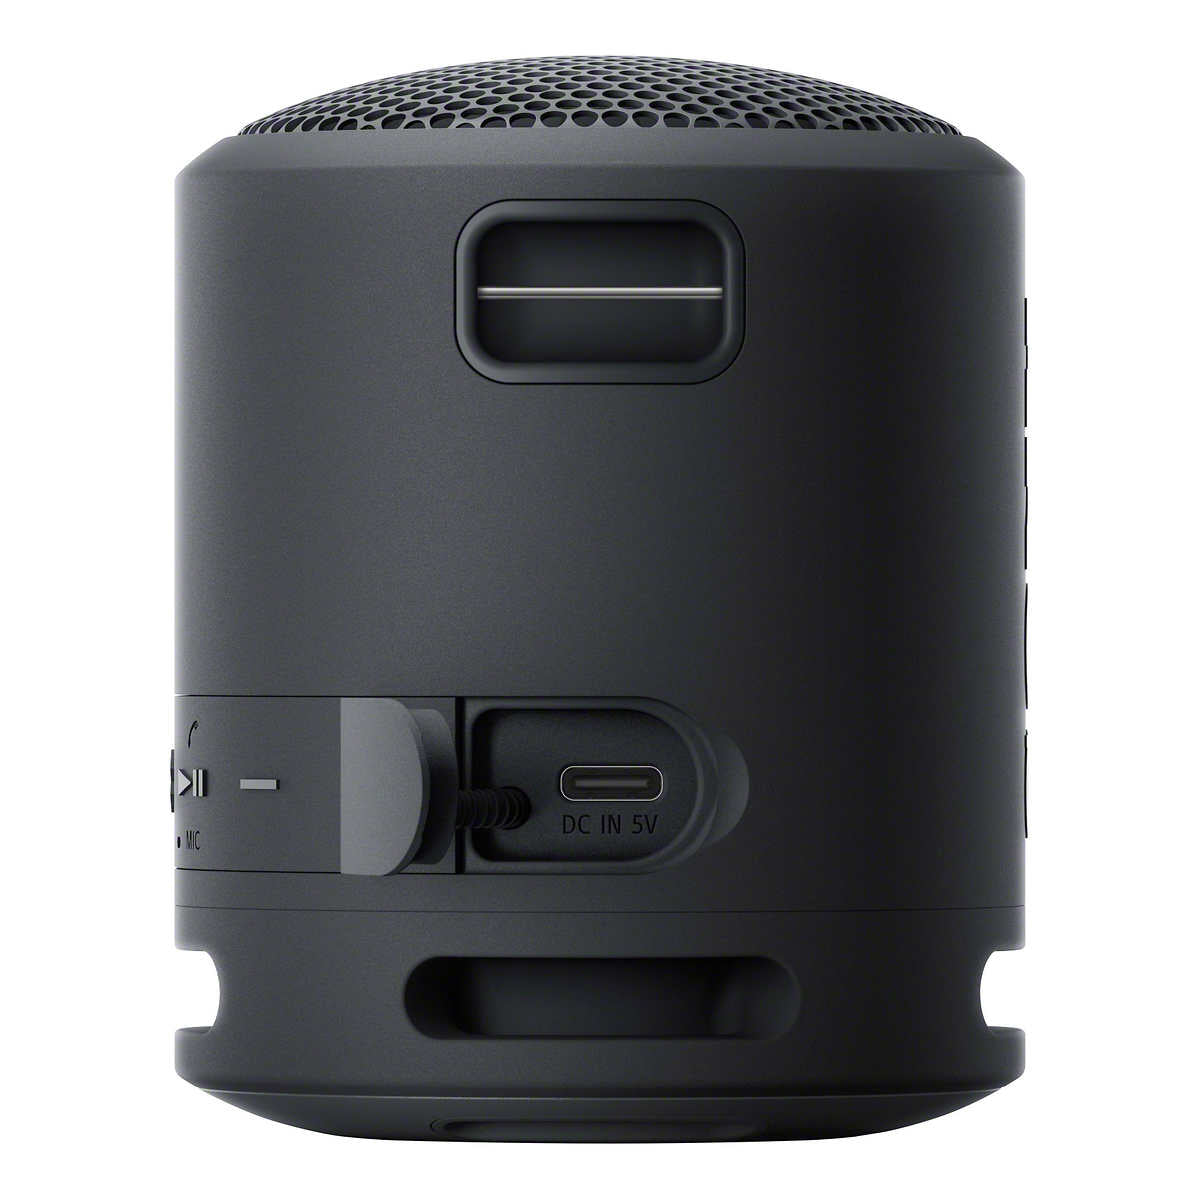 Sony-enceinte-sans-fil-srs-xb13-extra-bass-wireless-speaker-4